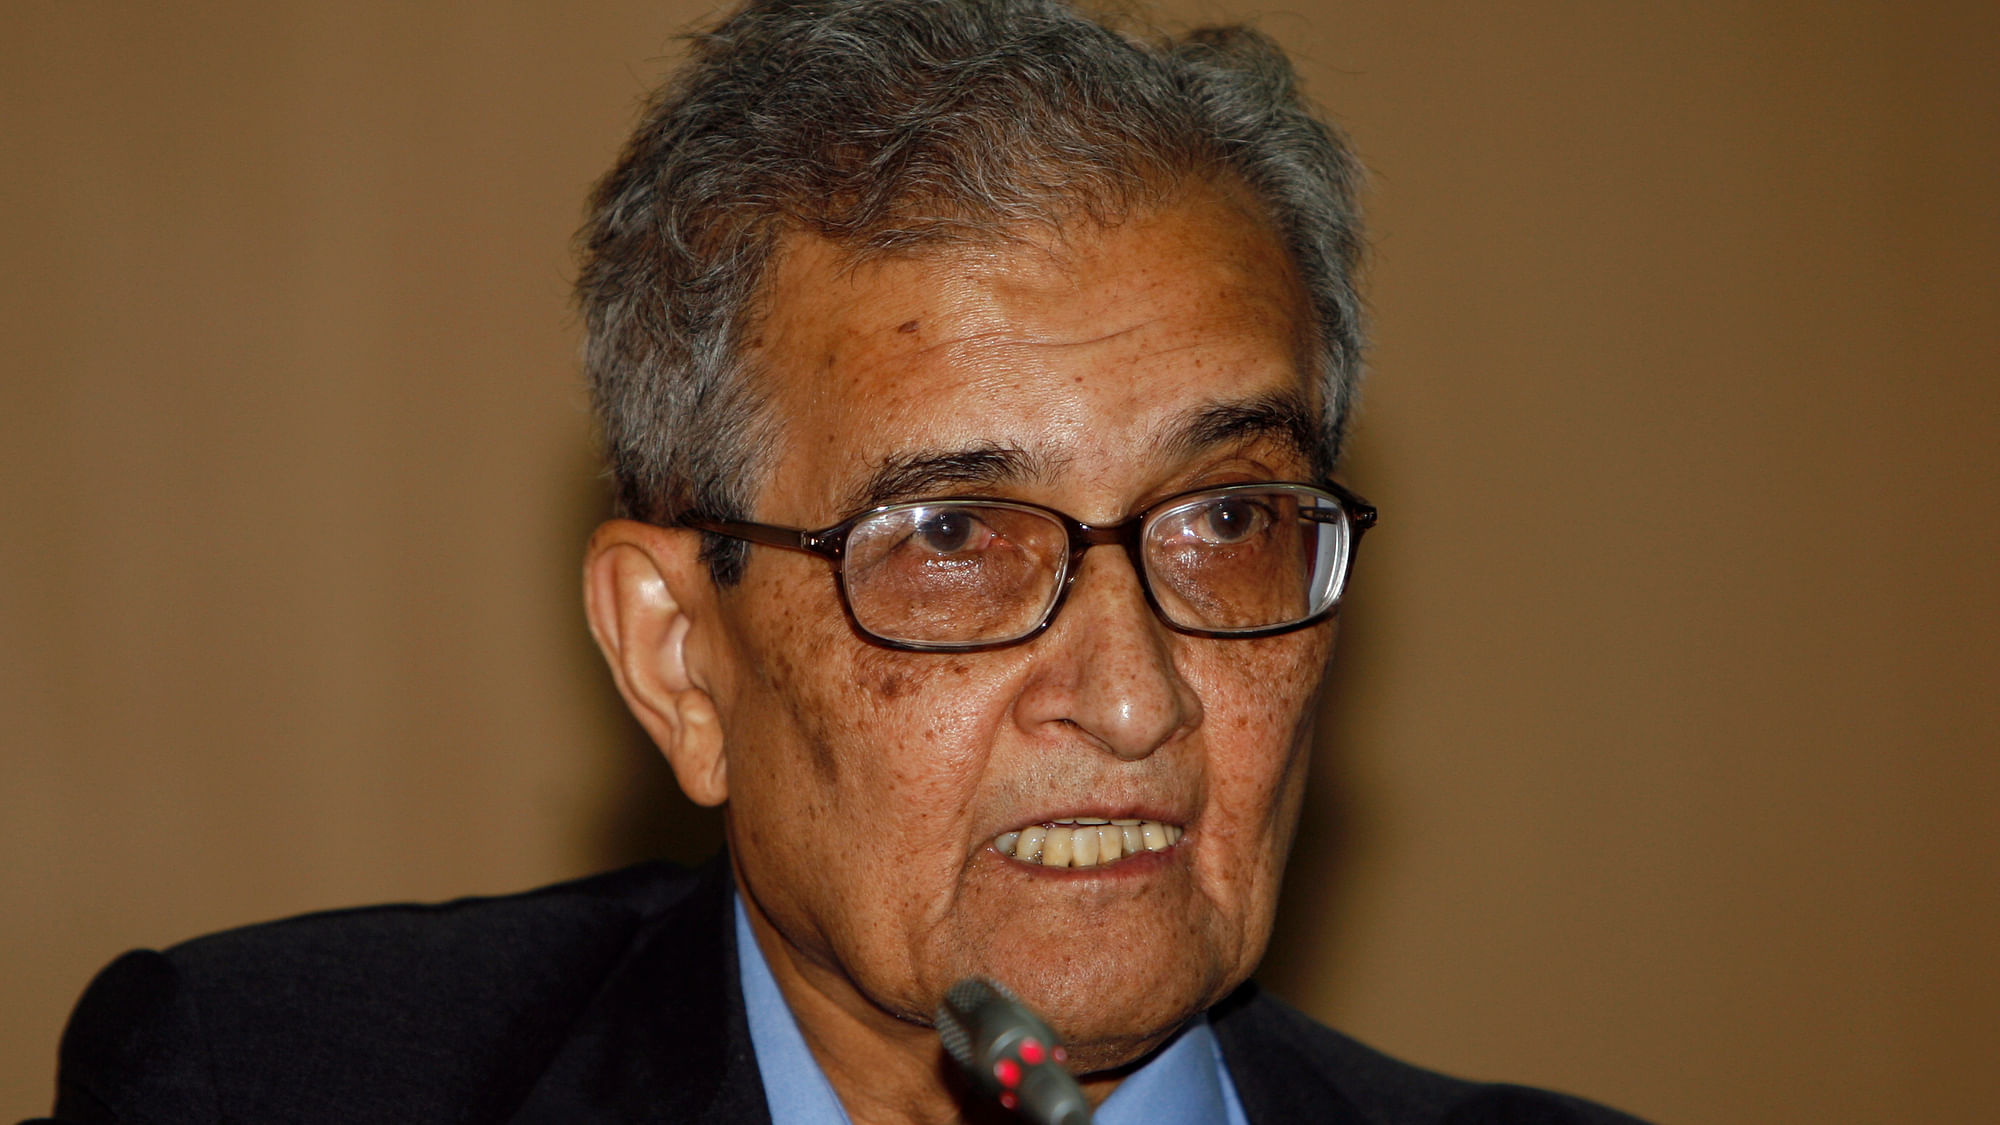 Image of Amartya Sen used for representational purposes.